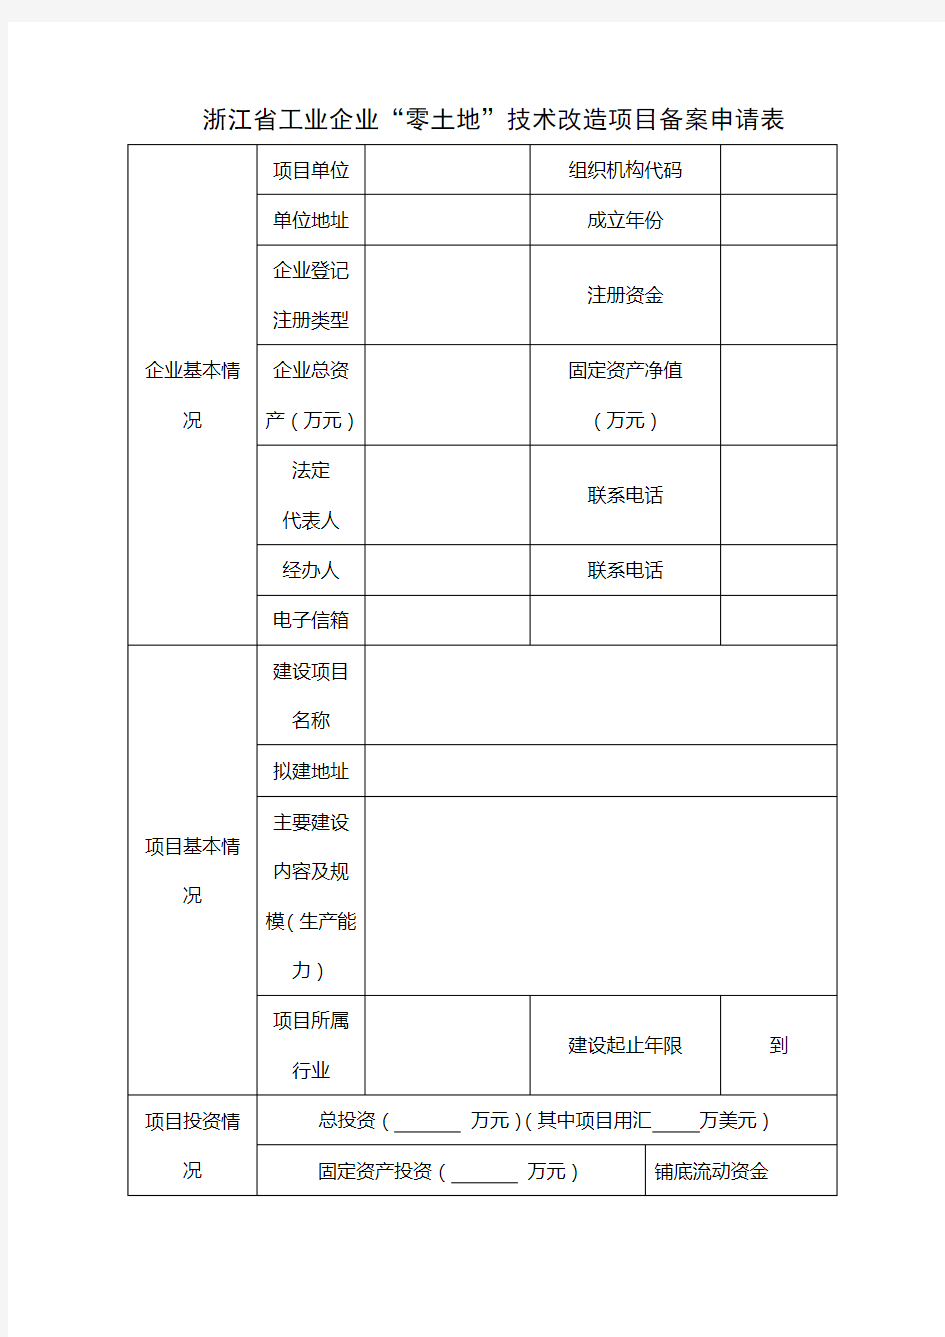 浙江工业企业零土地技术改造项目备案申请表